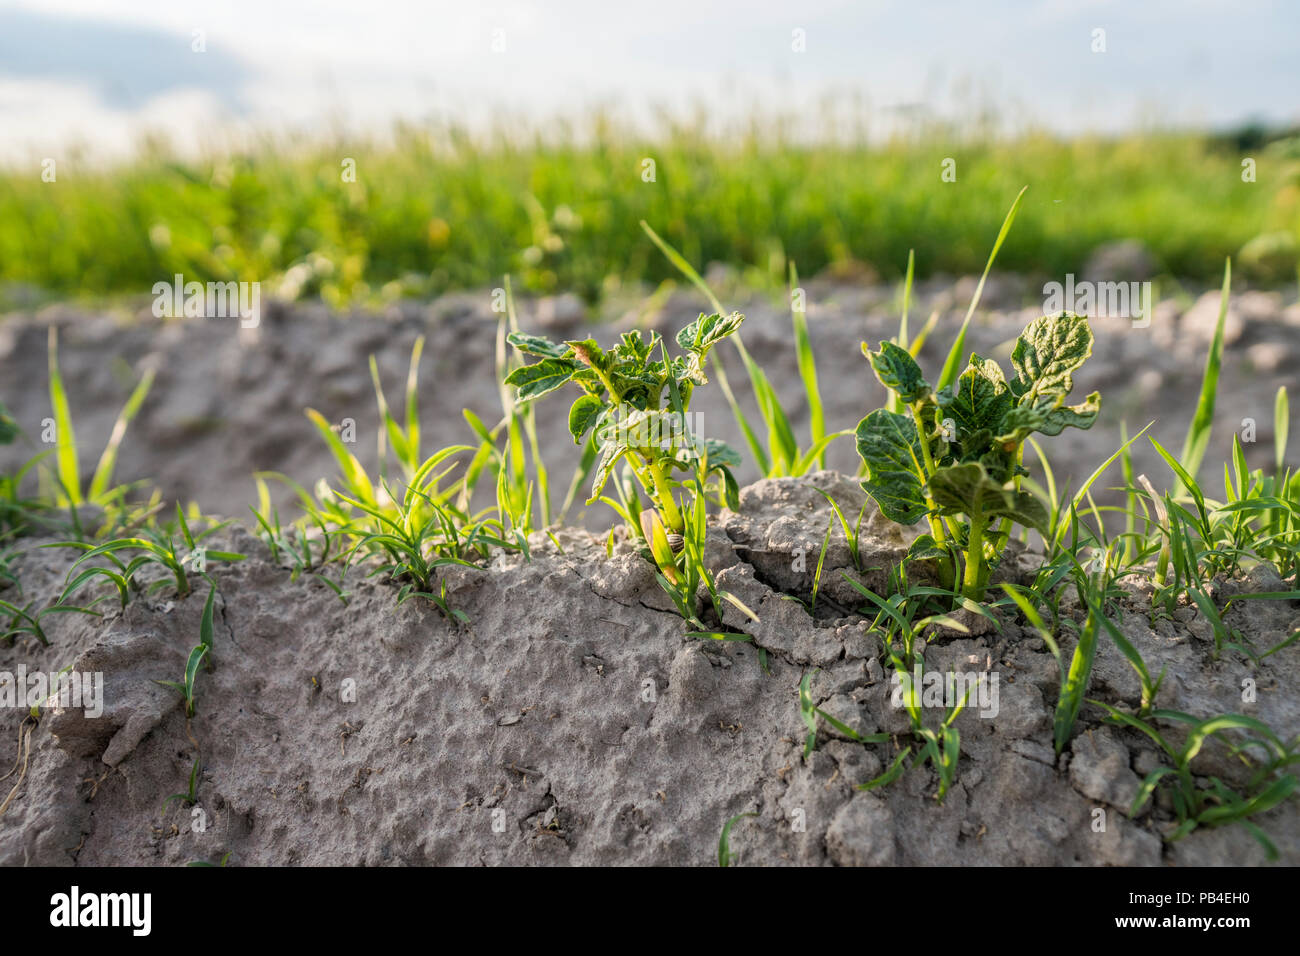 Junge Kartoffel auf den Boden bedecken. Anlage close-up. Die Pflänzchen der  junge Kartoffel Pflanzen sprießen aus dem Lehm im Frühjahr Stockfotografie  - Alamy